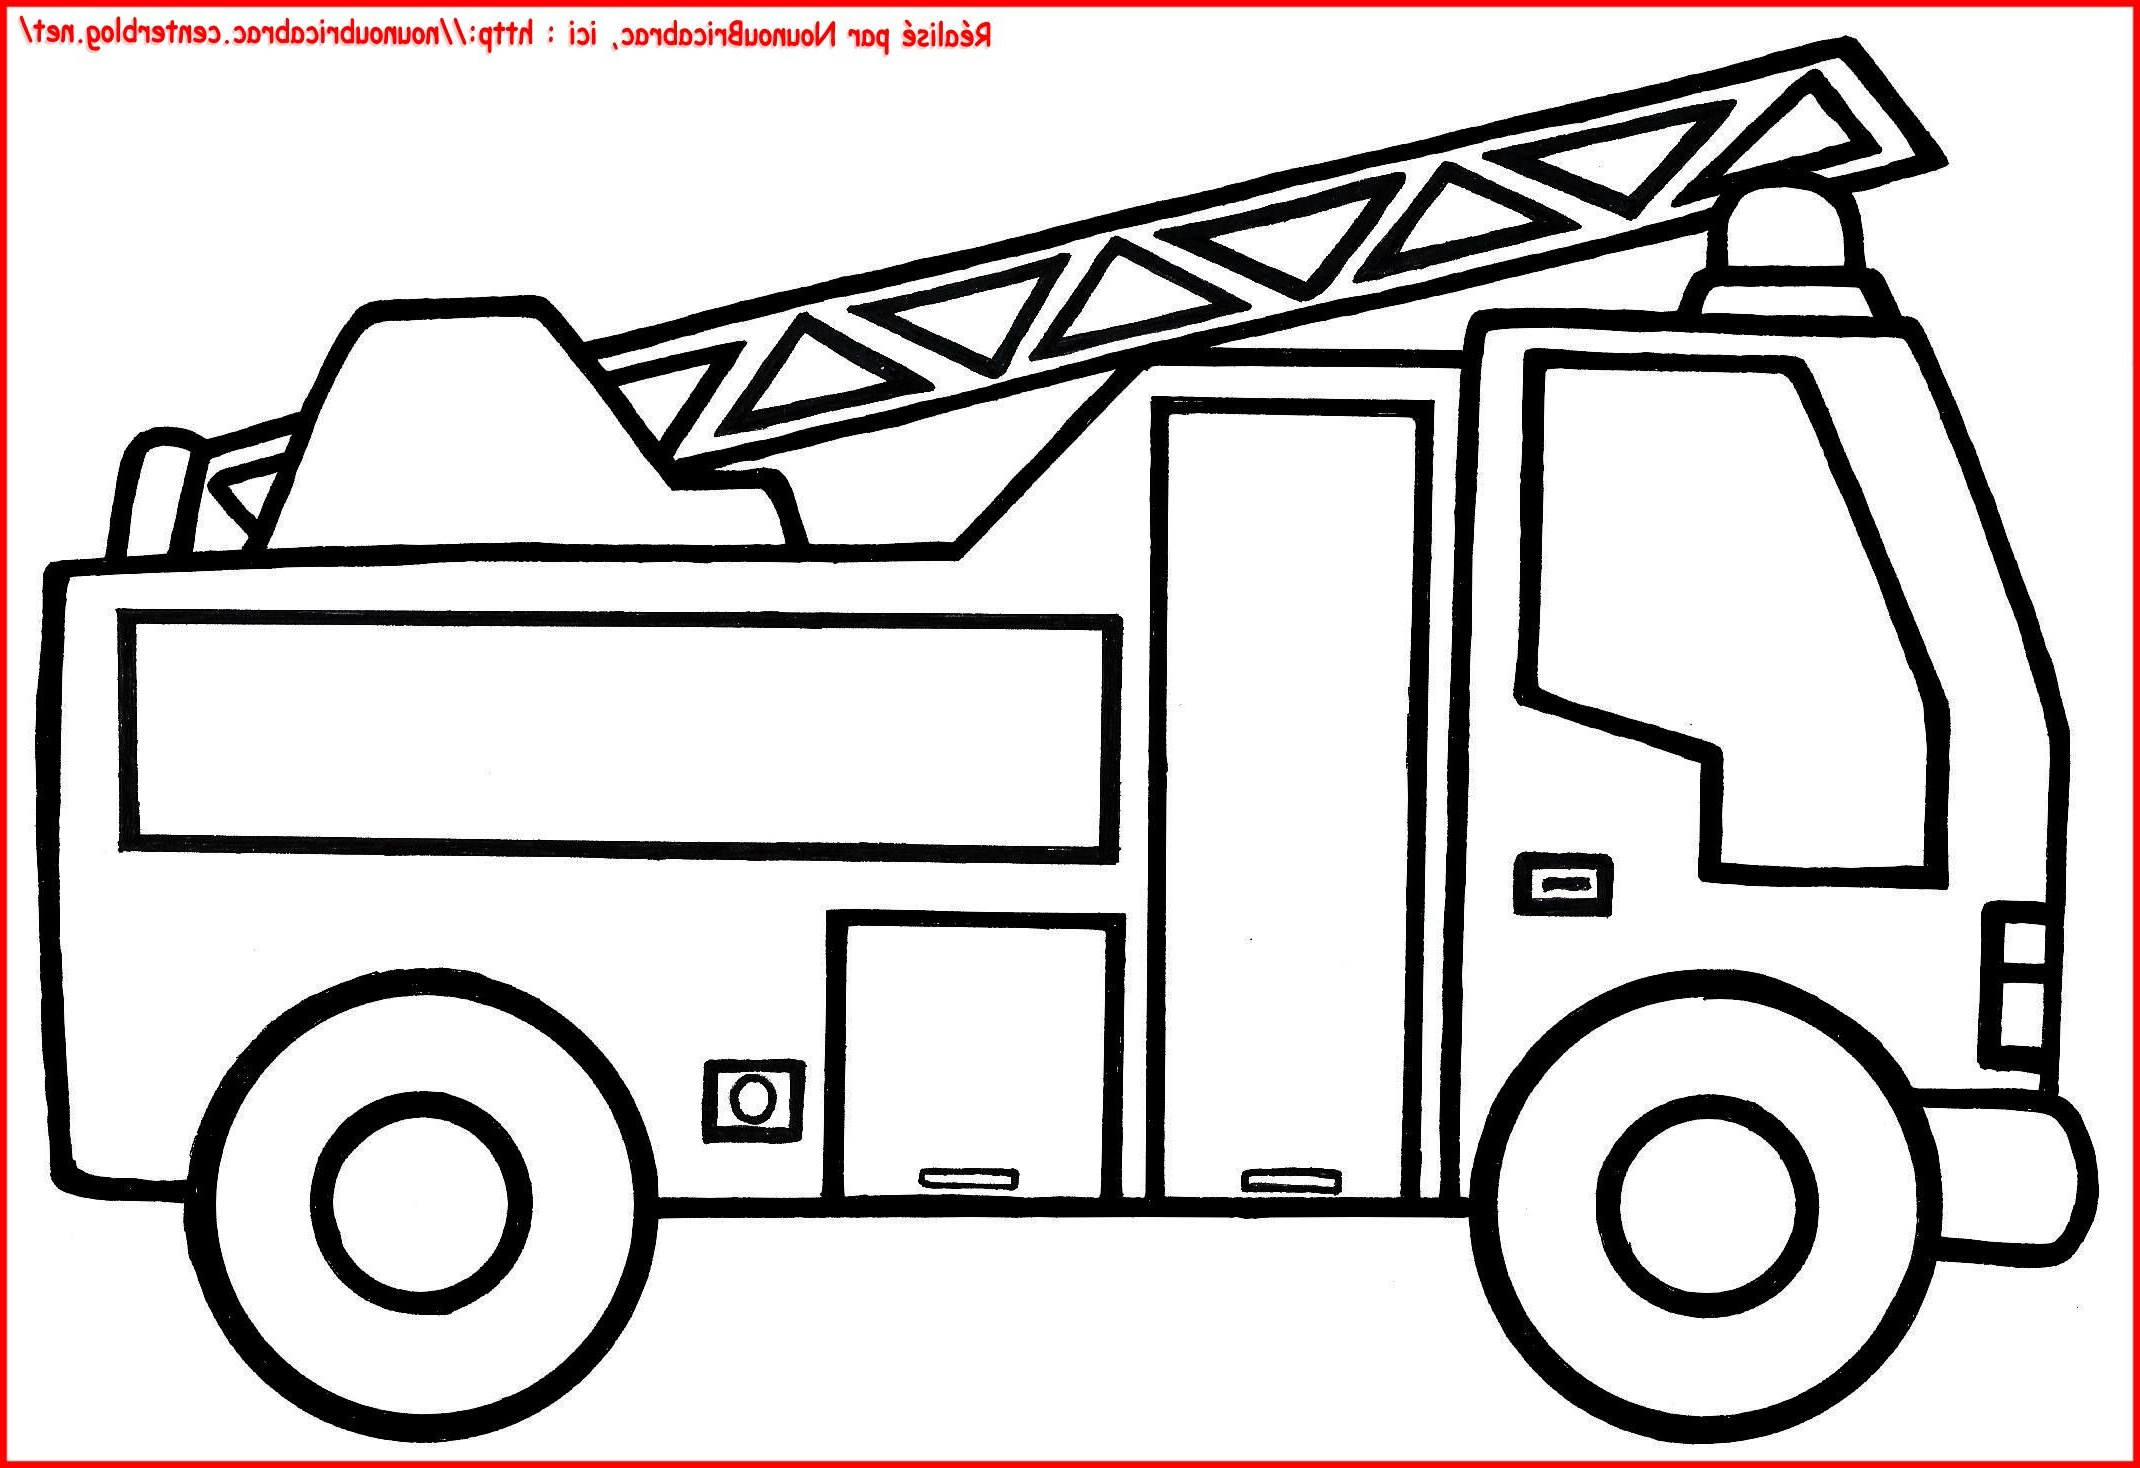 Dessin Camion De Pompier Cool Photographie Camion De Pompier À Colorier pour Camion De Pompier Coloriage